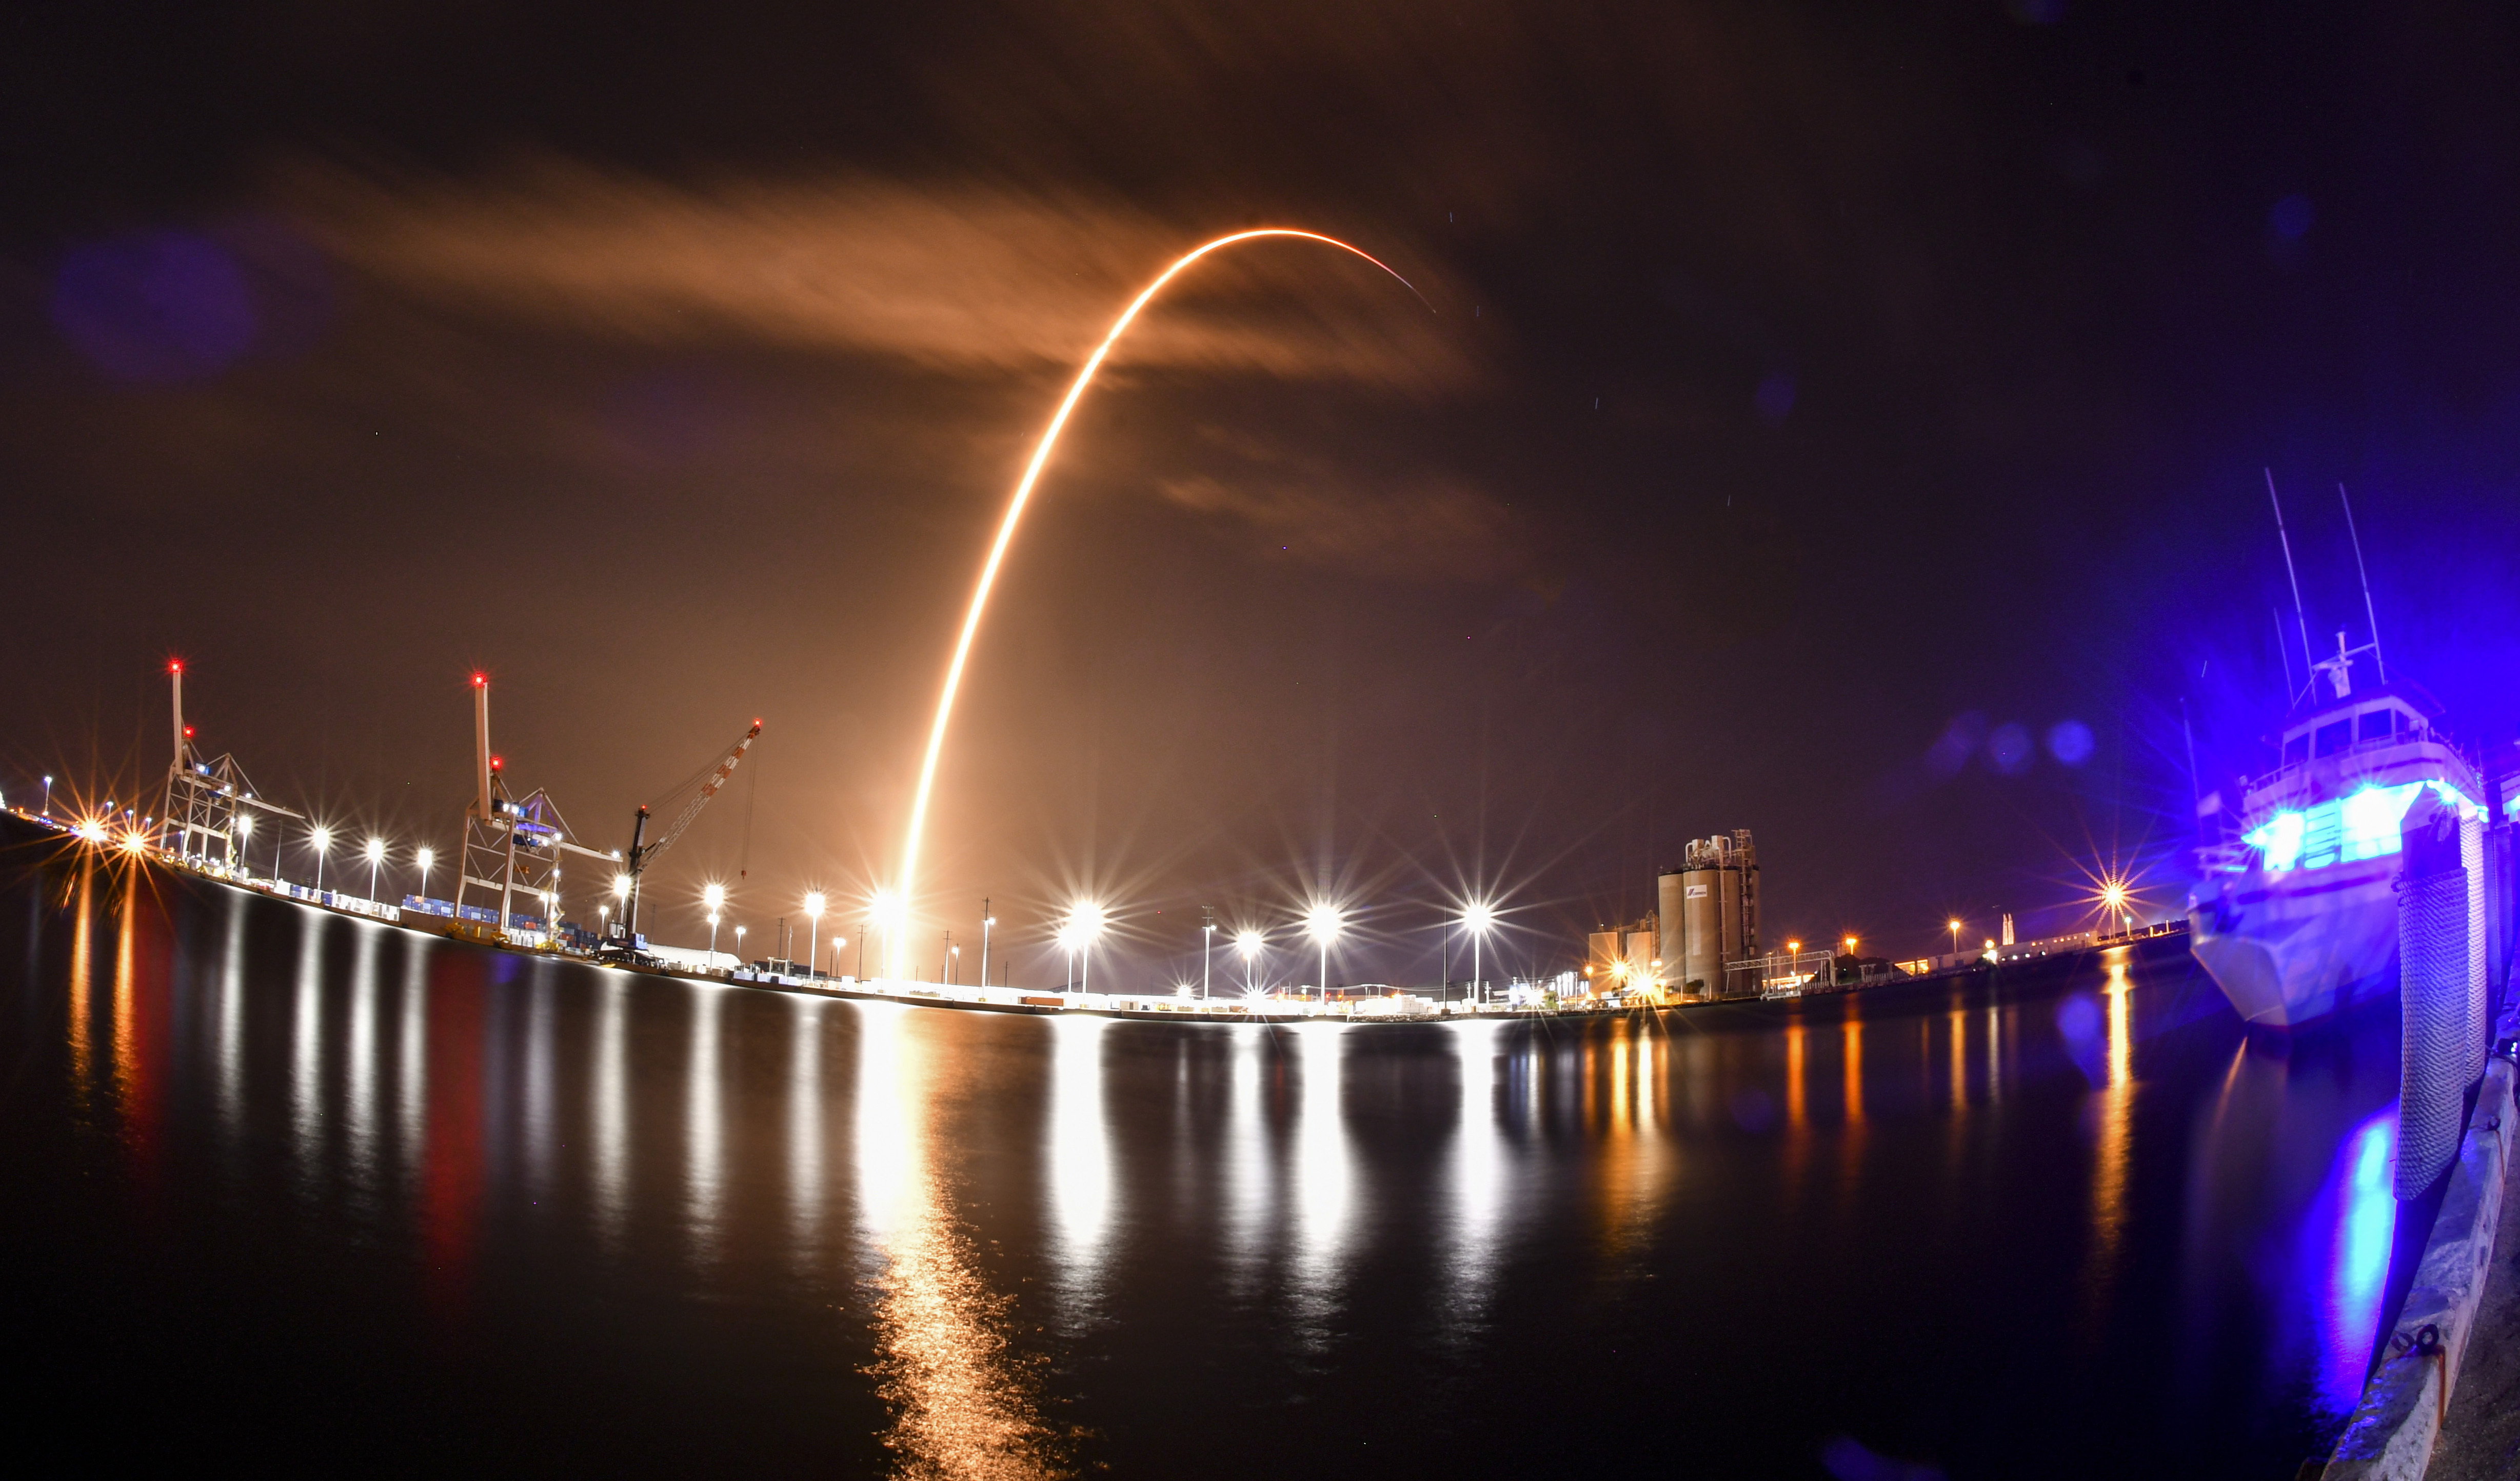 A SpaceX korlátozta az ukrán hadsereg hozzáférését a Starlink műholdas rendszerhez